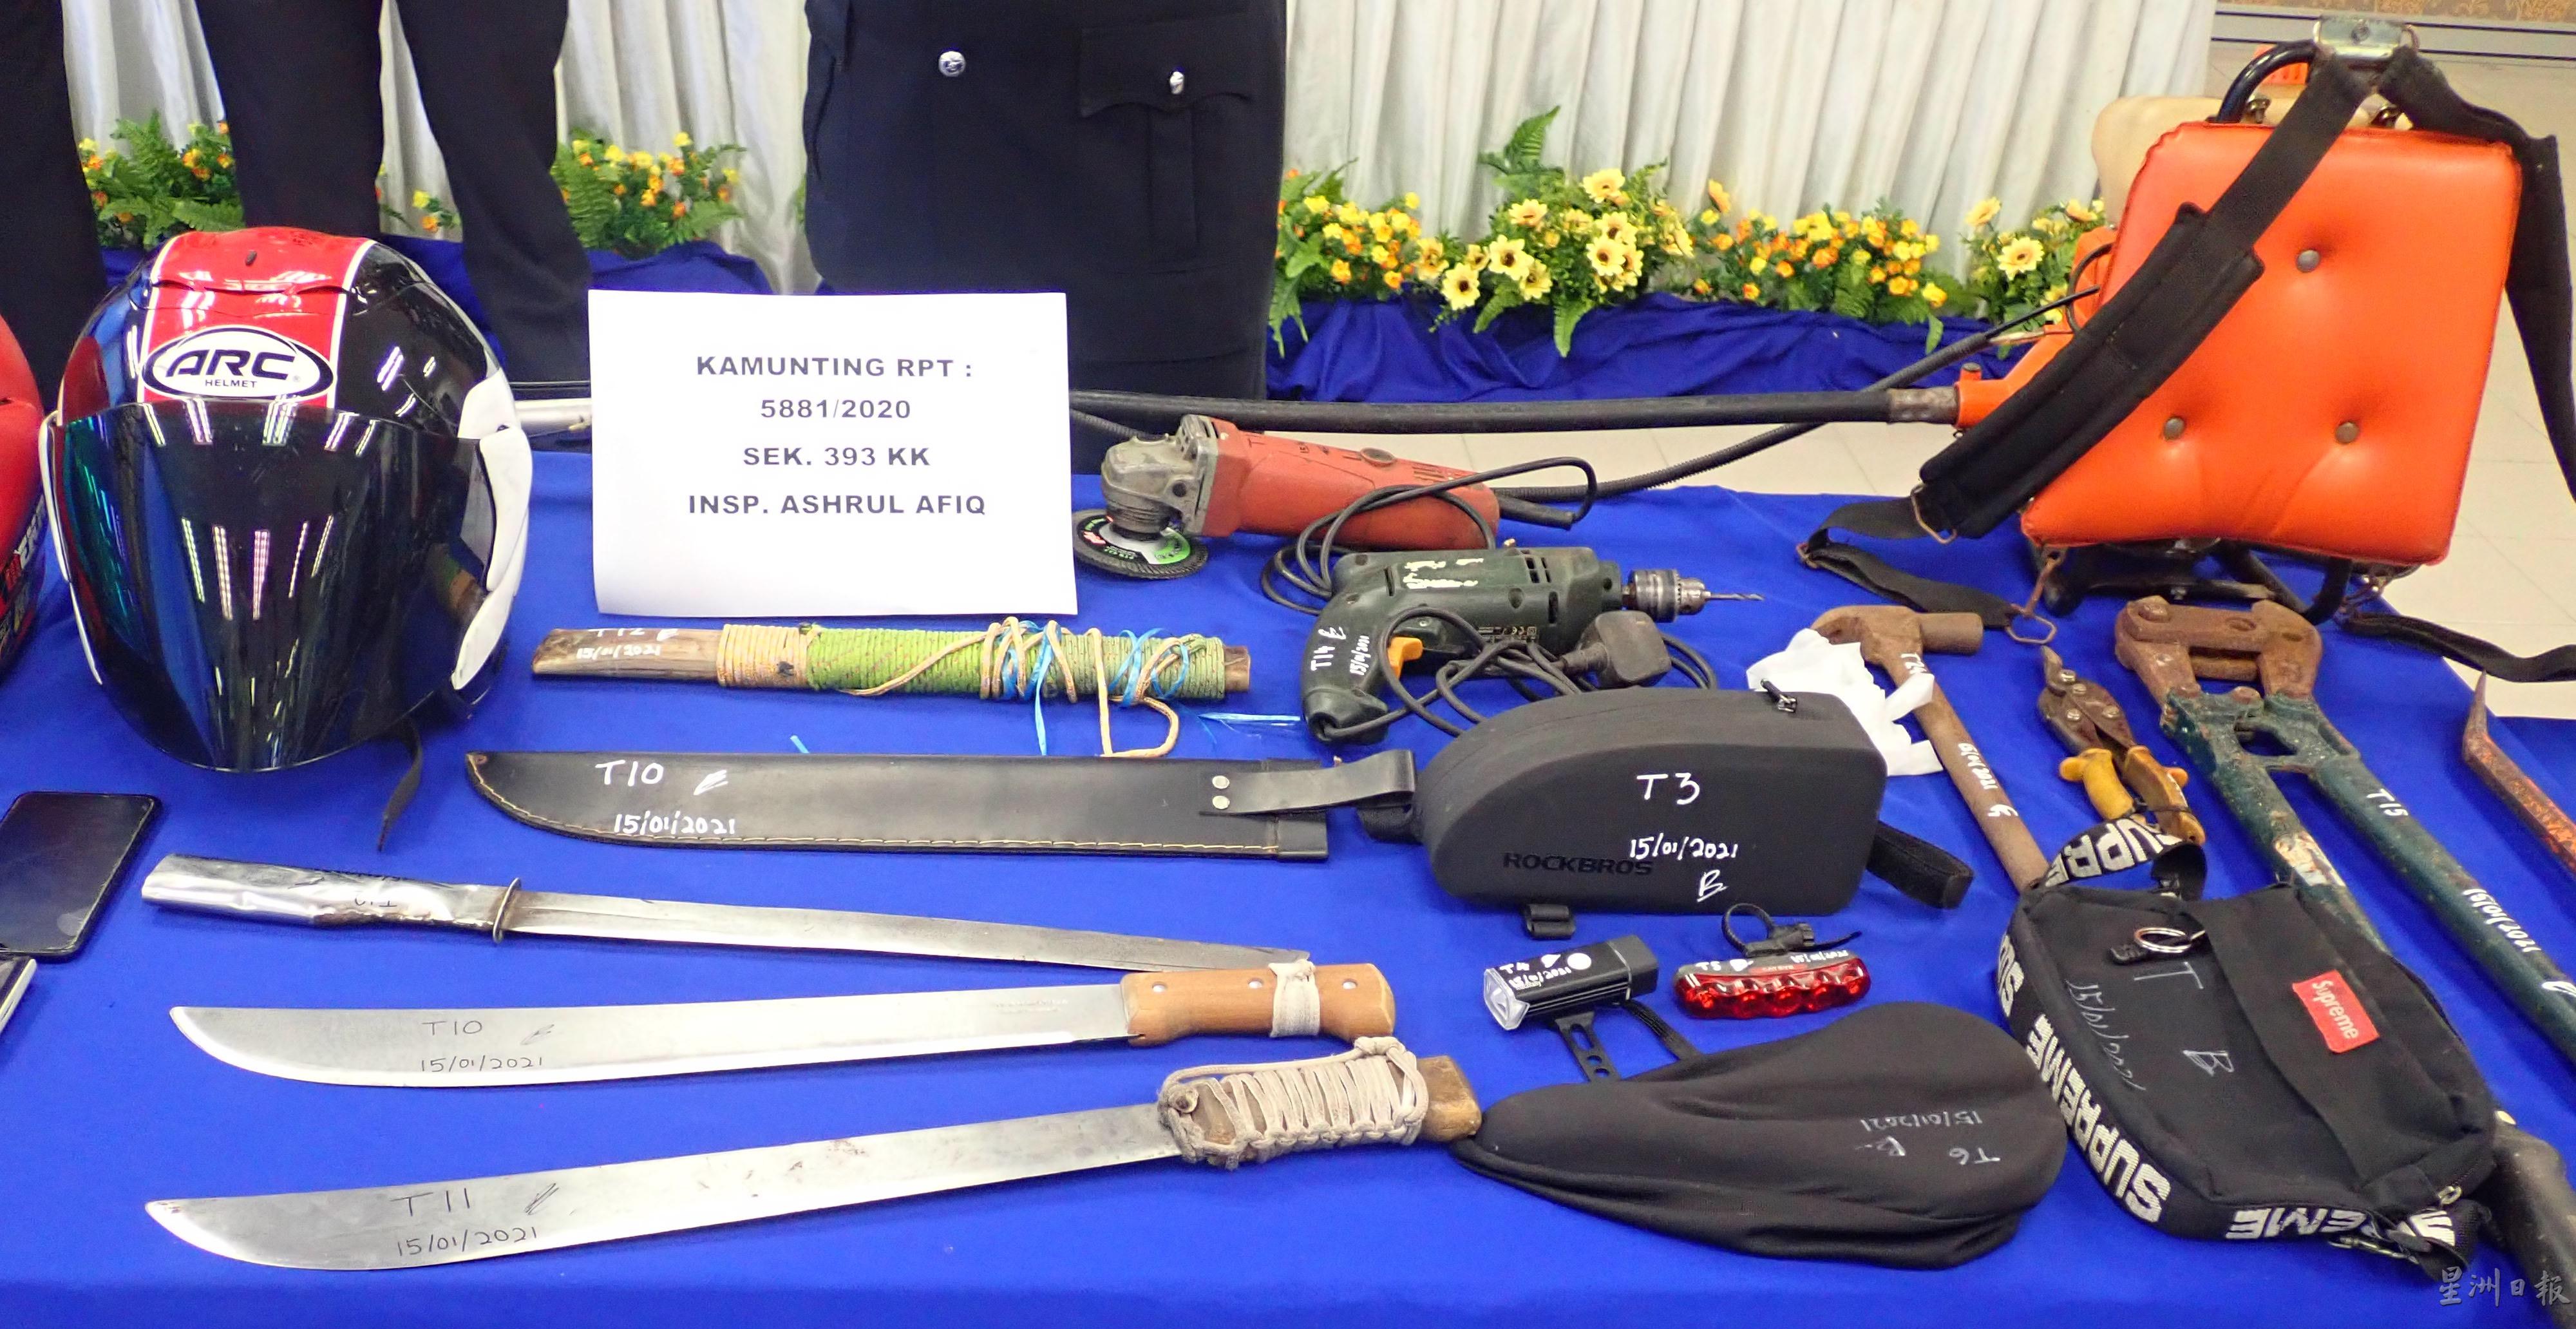 警方在行动中起获提部份失窃财物，包括匪徒用来干案的工具。

